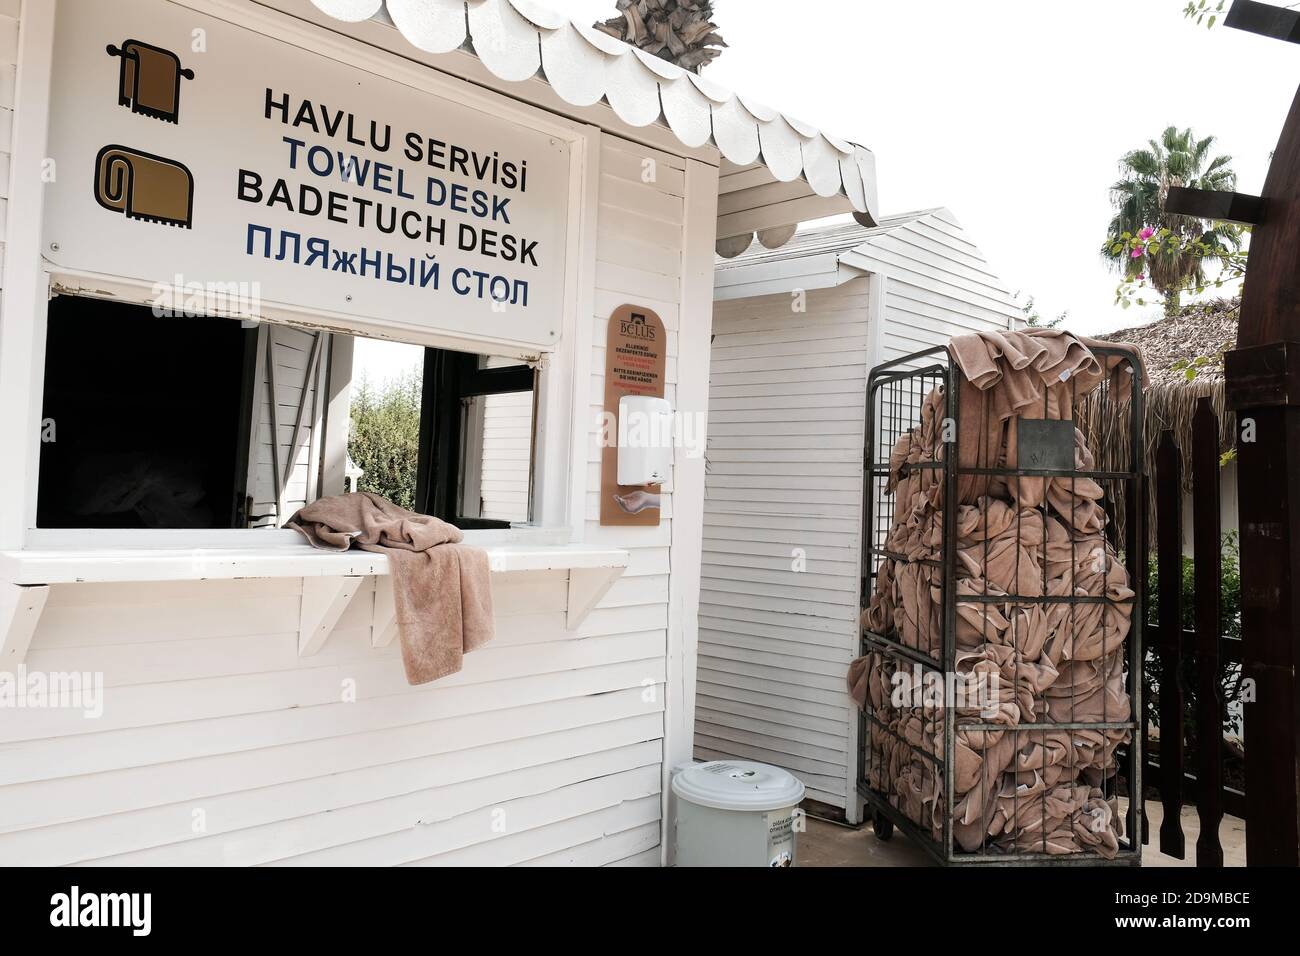 Belek, Turchia - Ottobre 2020: Asciugamani usati in un resort all-inclusive durante la pandemia. Igienizzare mani e carte per prendere un asciugamano a persona in modo sicuro. Foto Stock